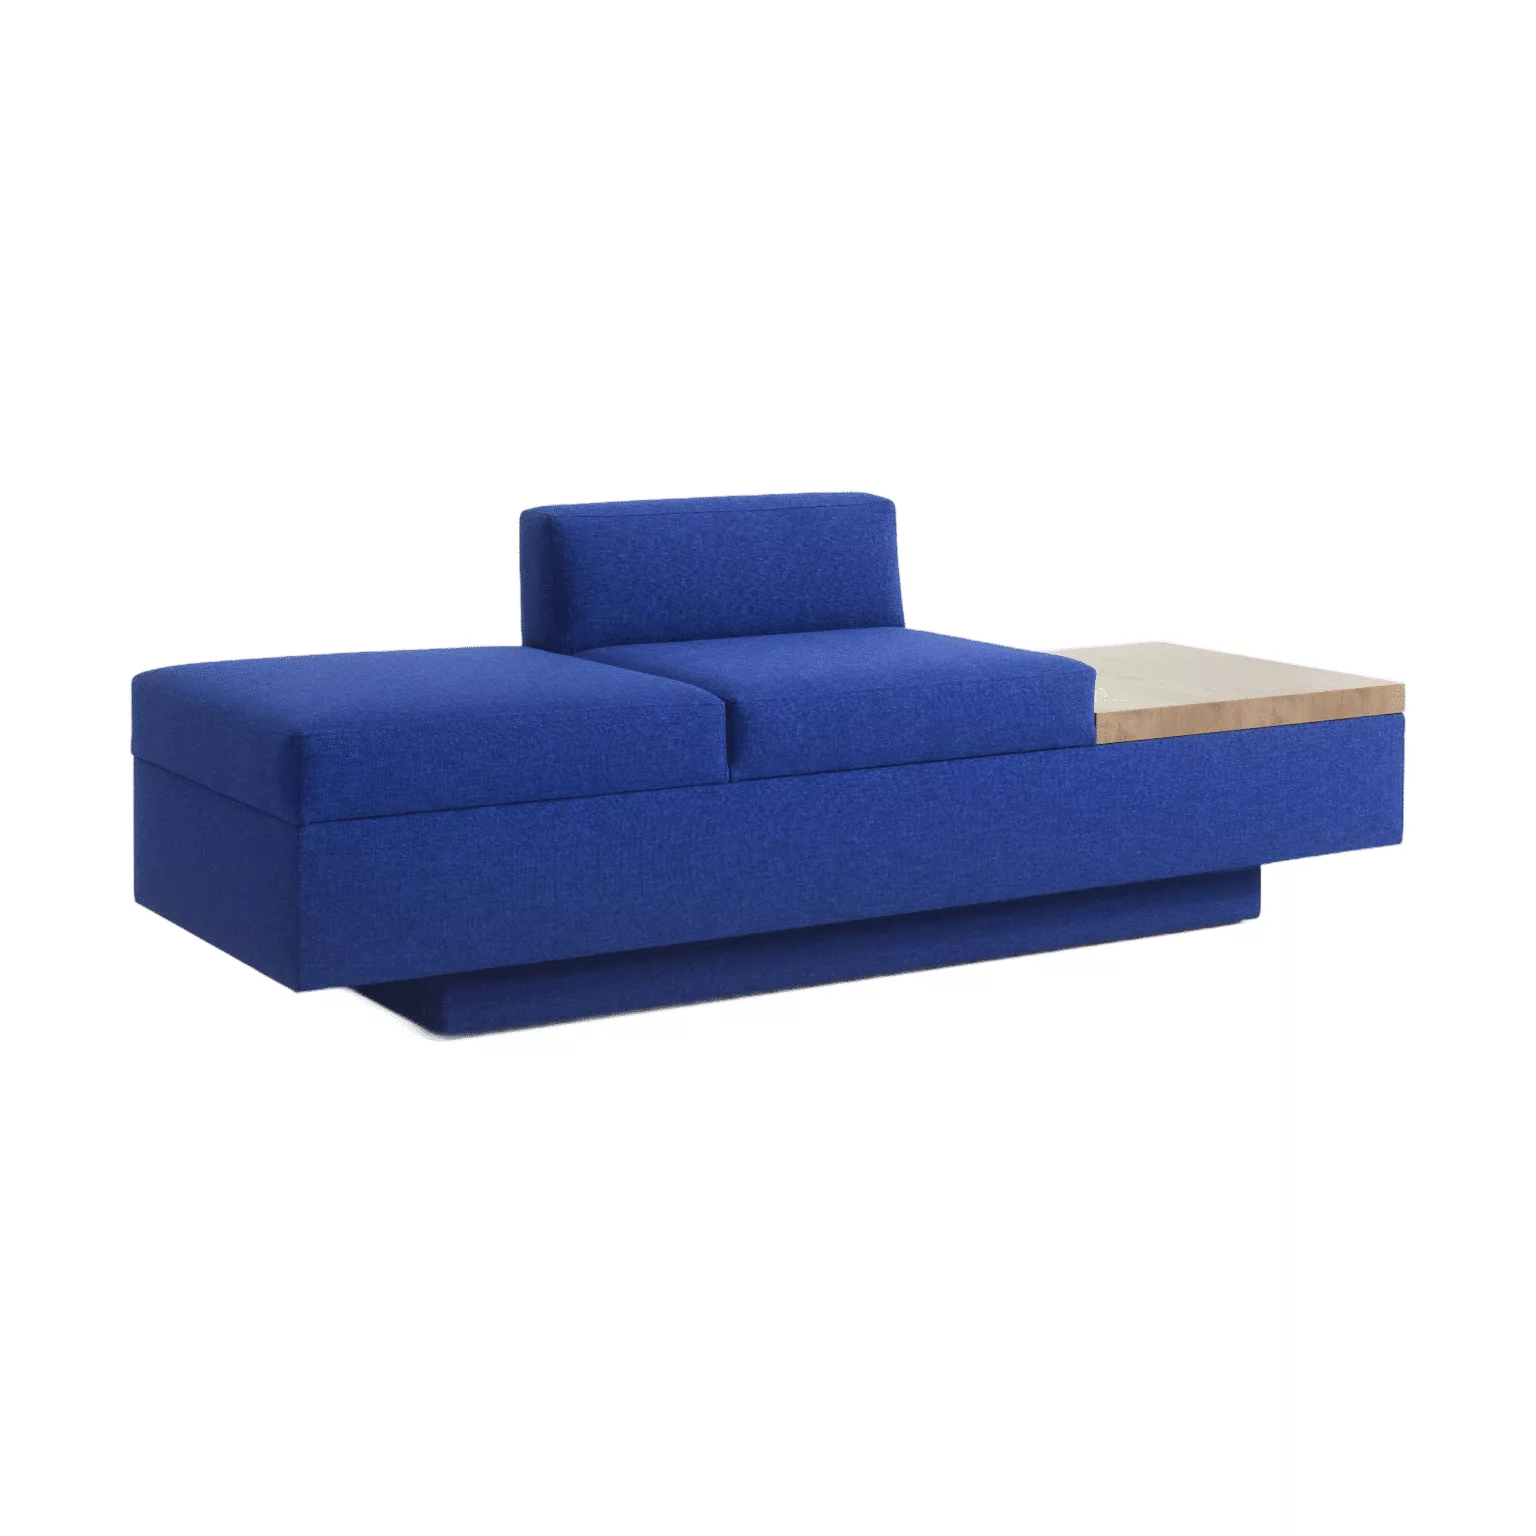 Blauwe 2 zits bank met een tafelblad als onderdeel van het meubel.